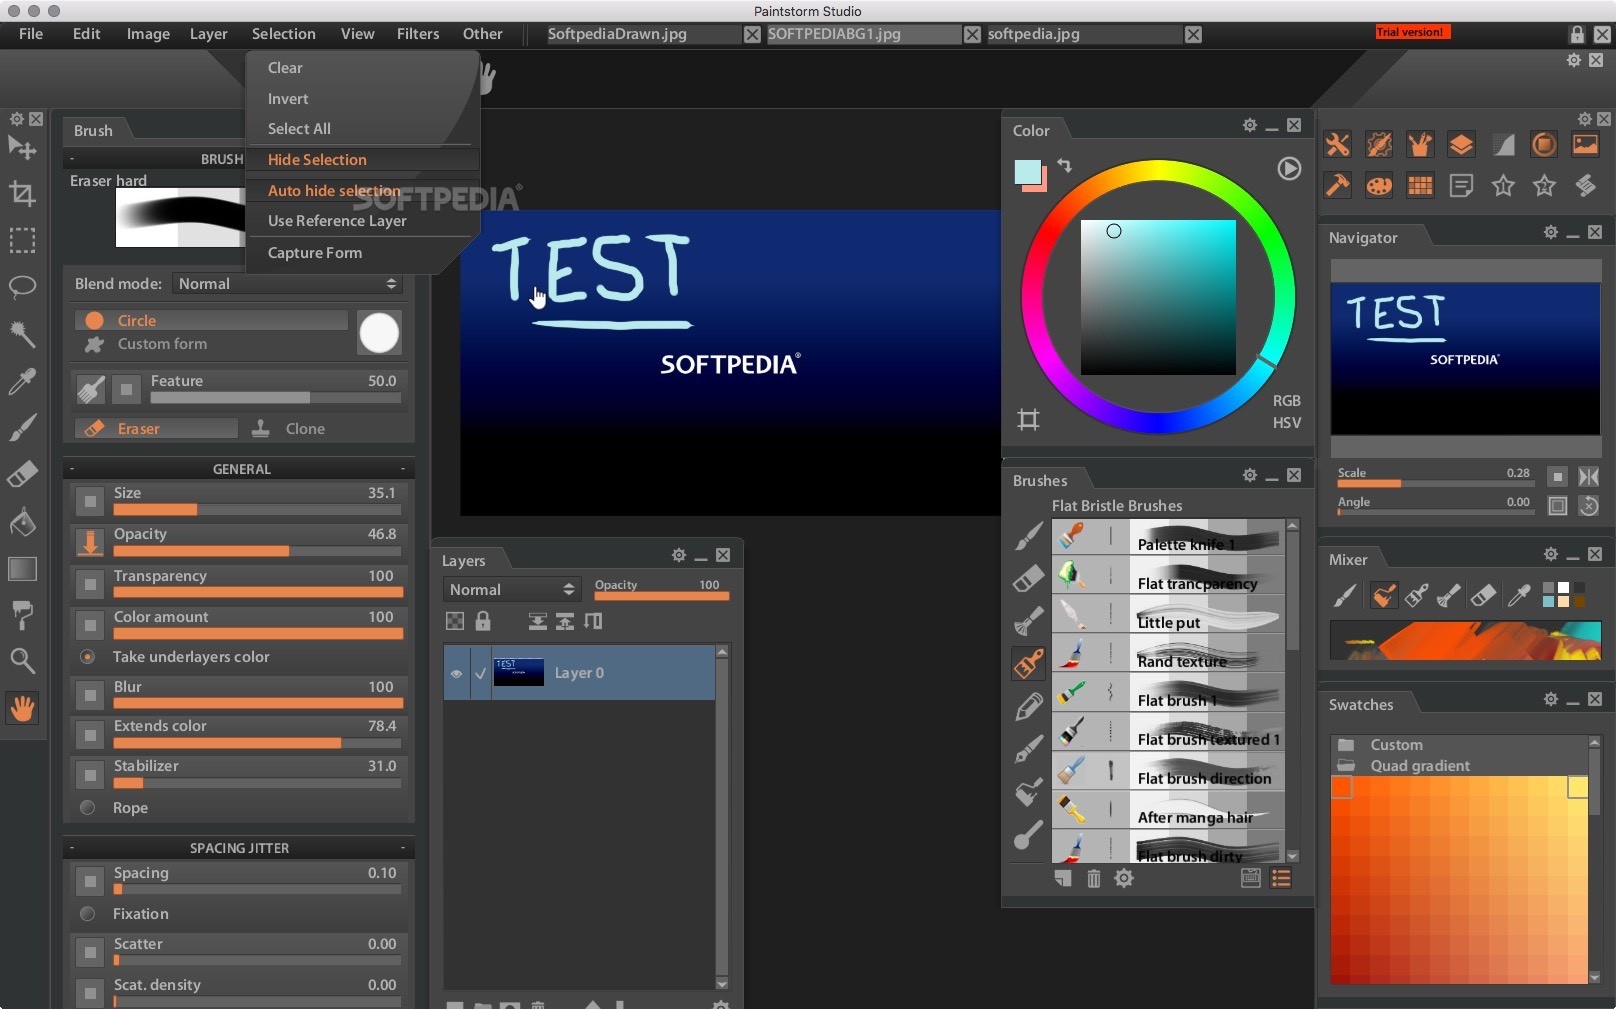 Paintstorm Studio (Mac) - Download